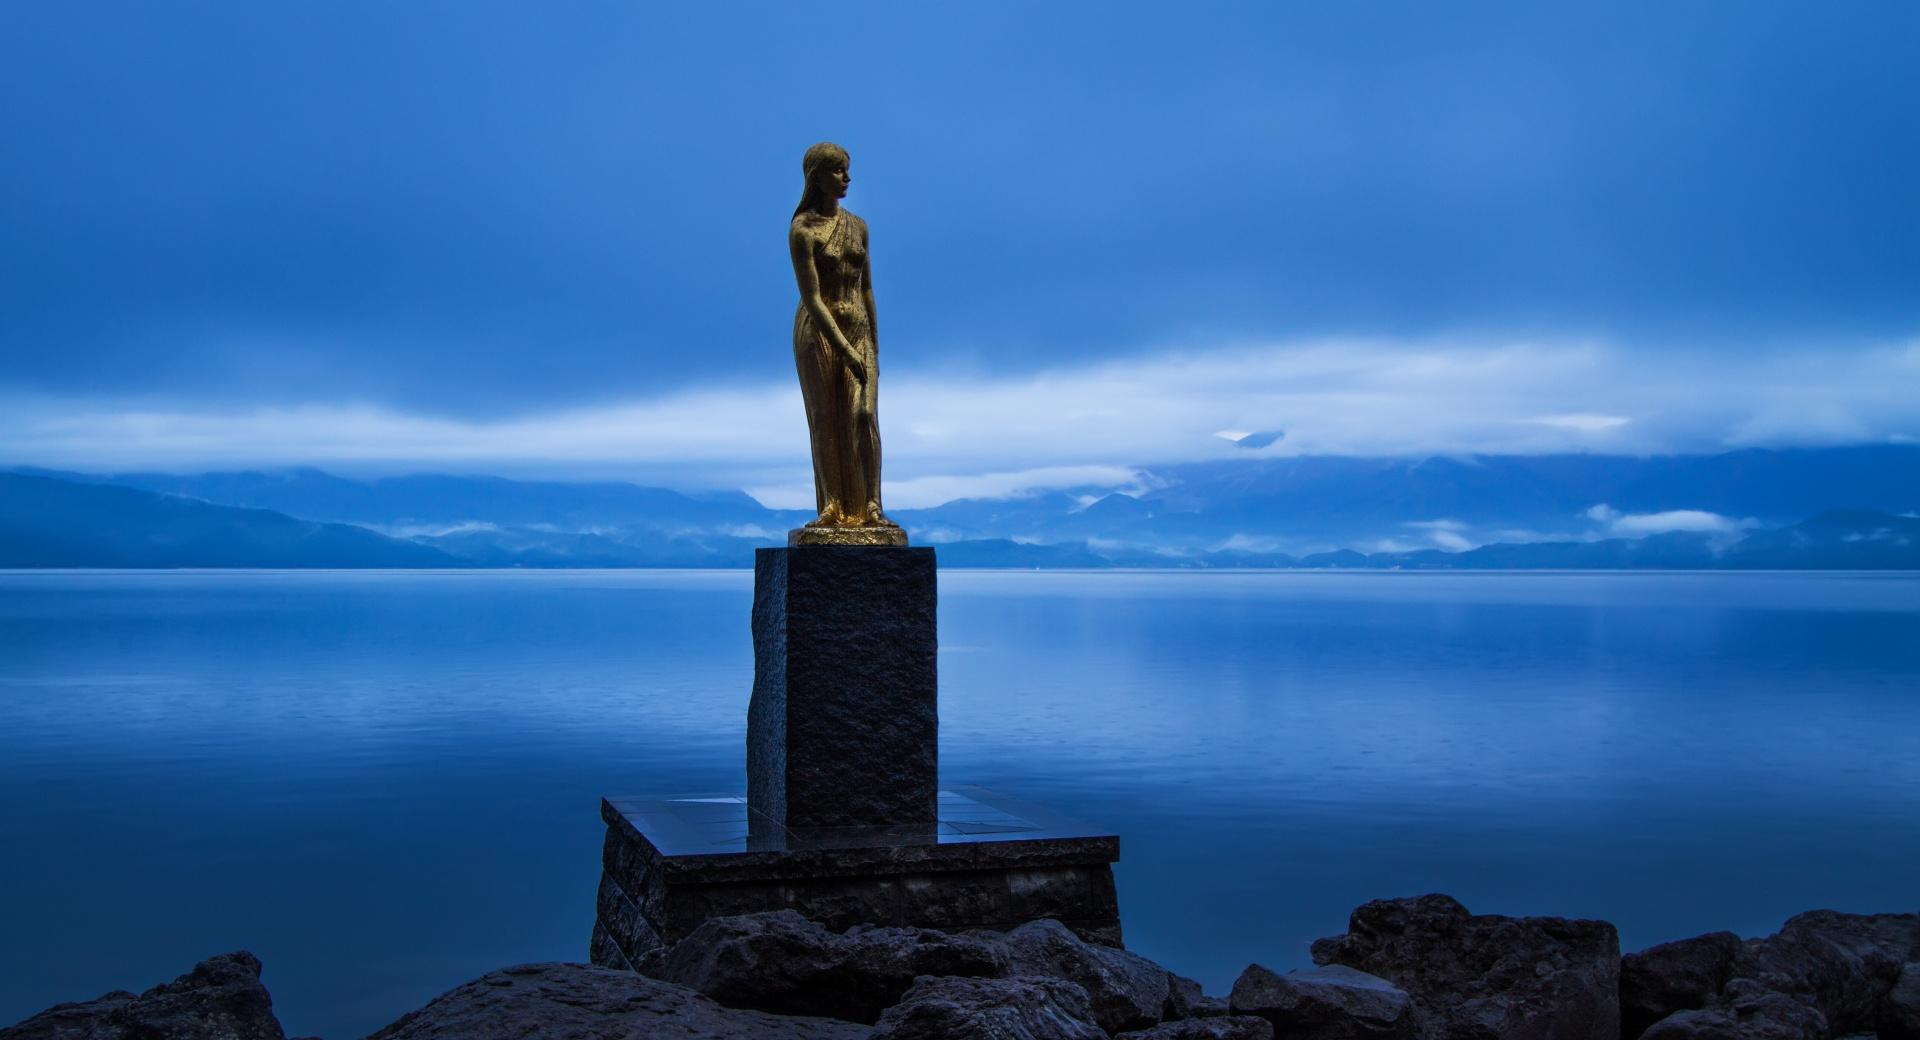 Statue of Tatsuko, Lake Tazawa at 1024 x 768 size wallpapers HD quality